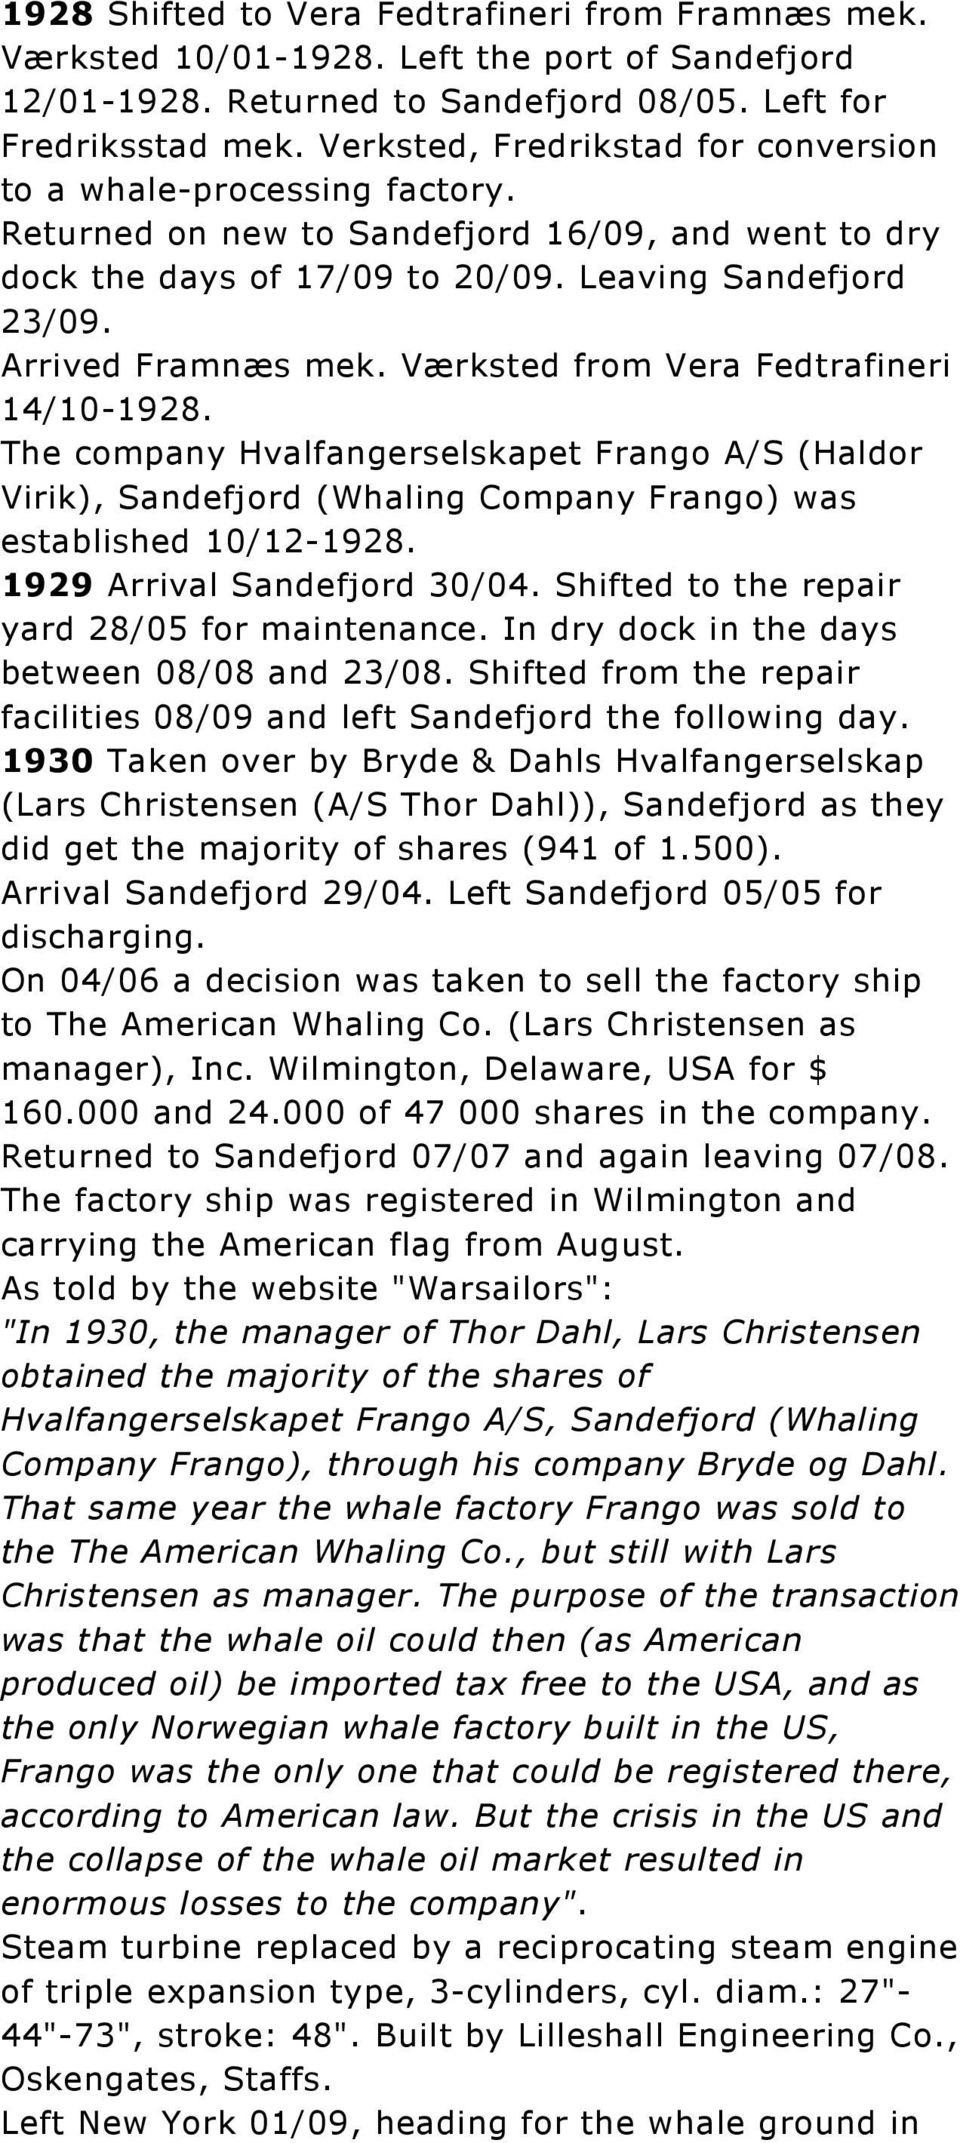 Værksted from Vera Fedtrafineri 14/10-1928. The company Hvalfangerselskapet Frango A/S (Haldor Virik), Sandefjord (Whaling Company Frango) was established 10/12-1928. 1929 Arrival Sandefjord 30/04.